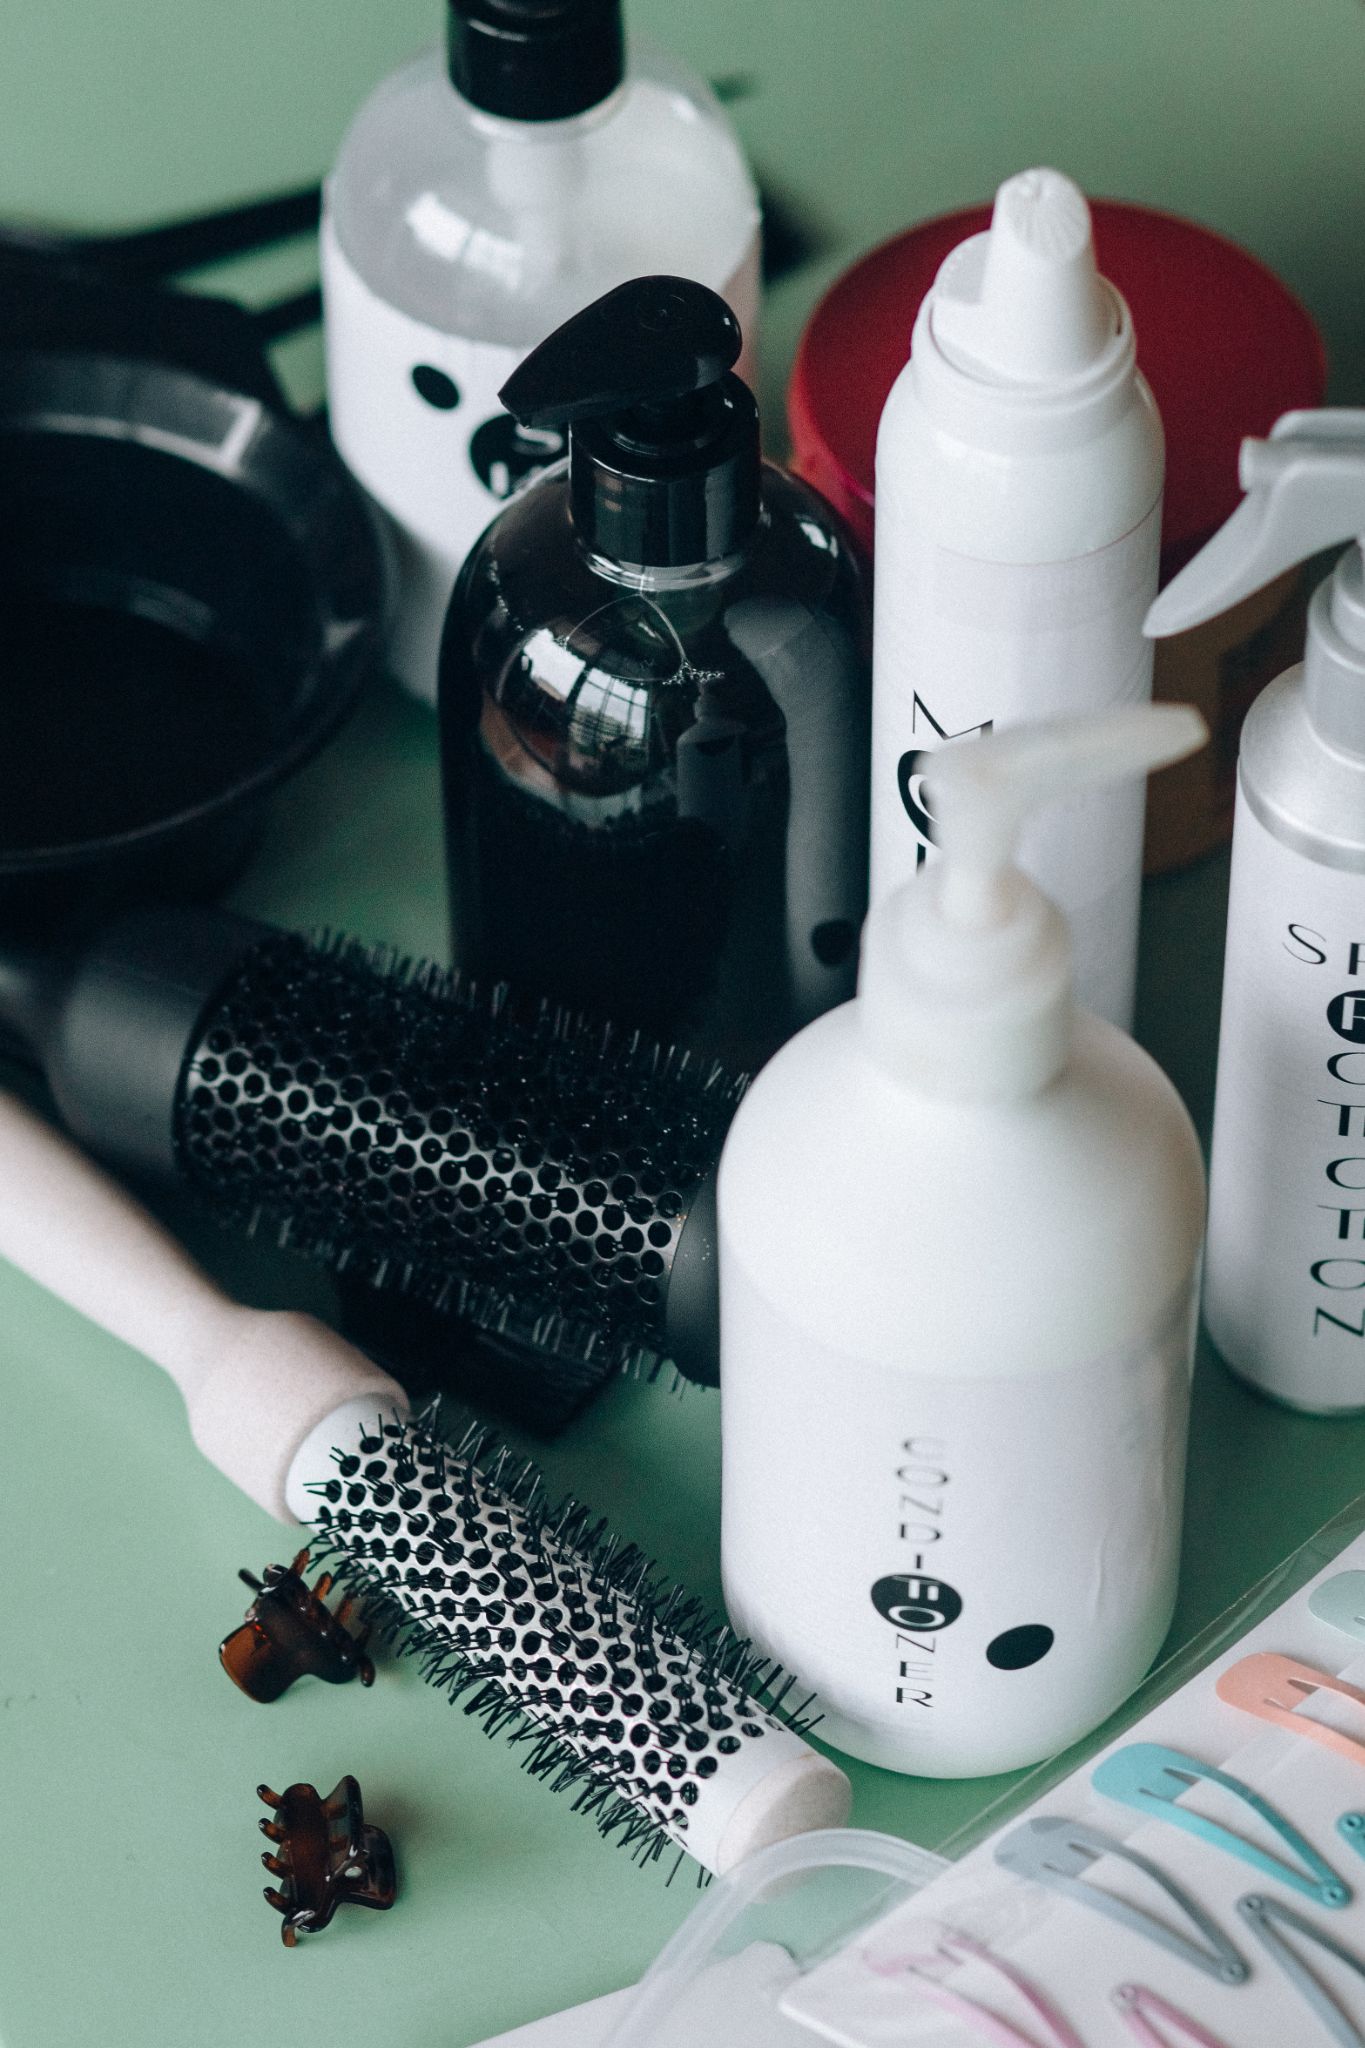 Acessórios capilares, como escovas, presilhas e clipes de cabelo, além de recipientes com produtos. Todos os itens necessários para se pintar o cabelo sozinha em casa.